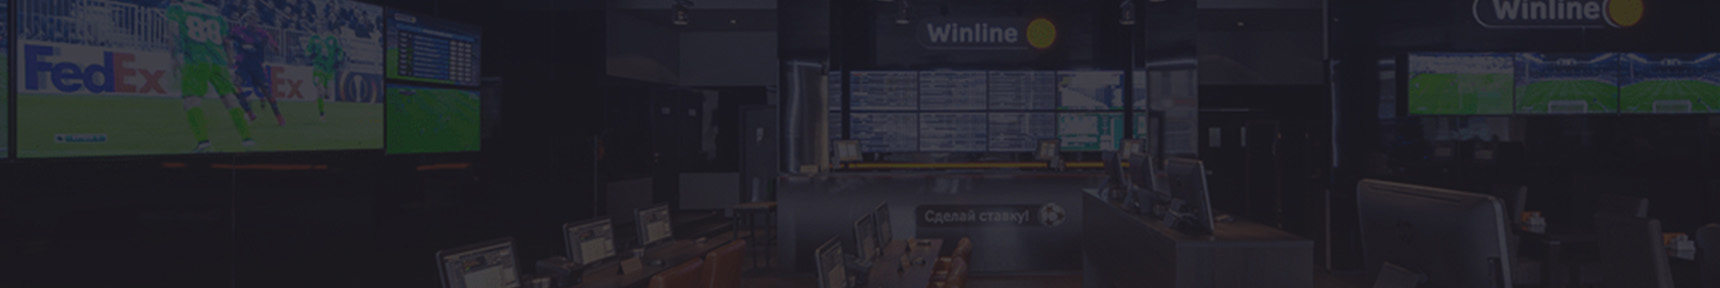 Winline ru – букмекерская контора. Официальный сайт